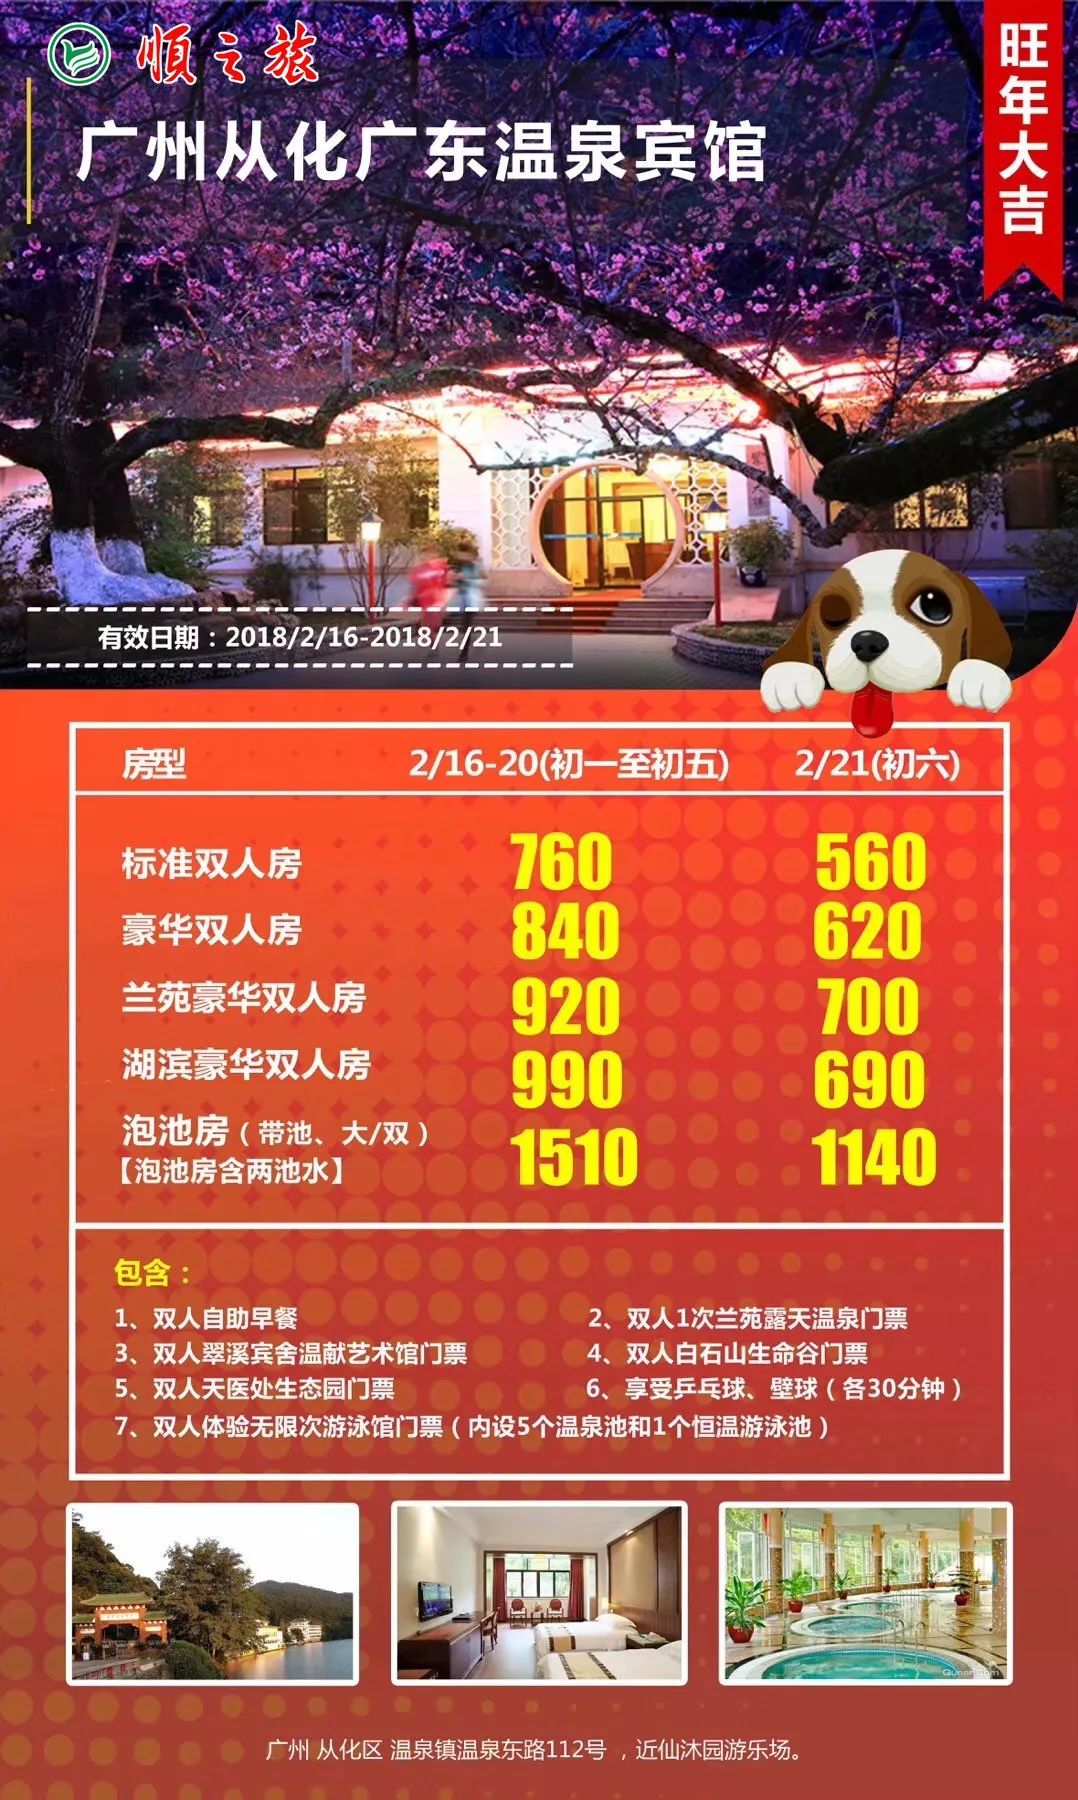 广州从化广东温泉宾馆 春节入住低至560元/间 预订提醒:提交订单后,以